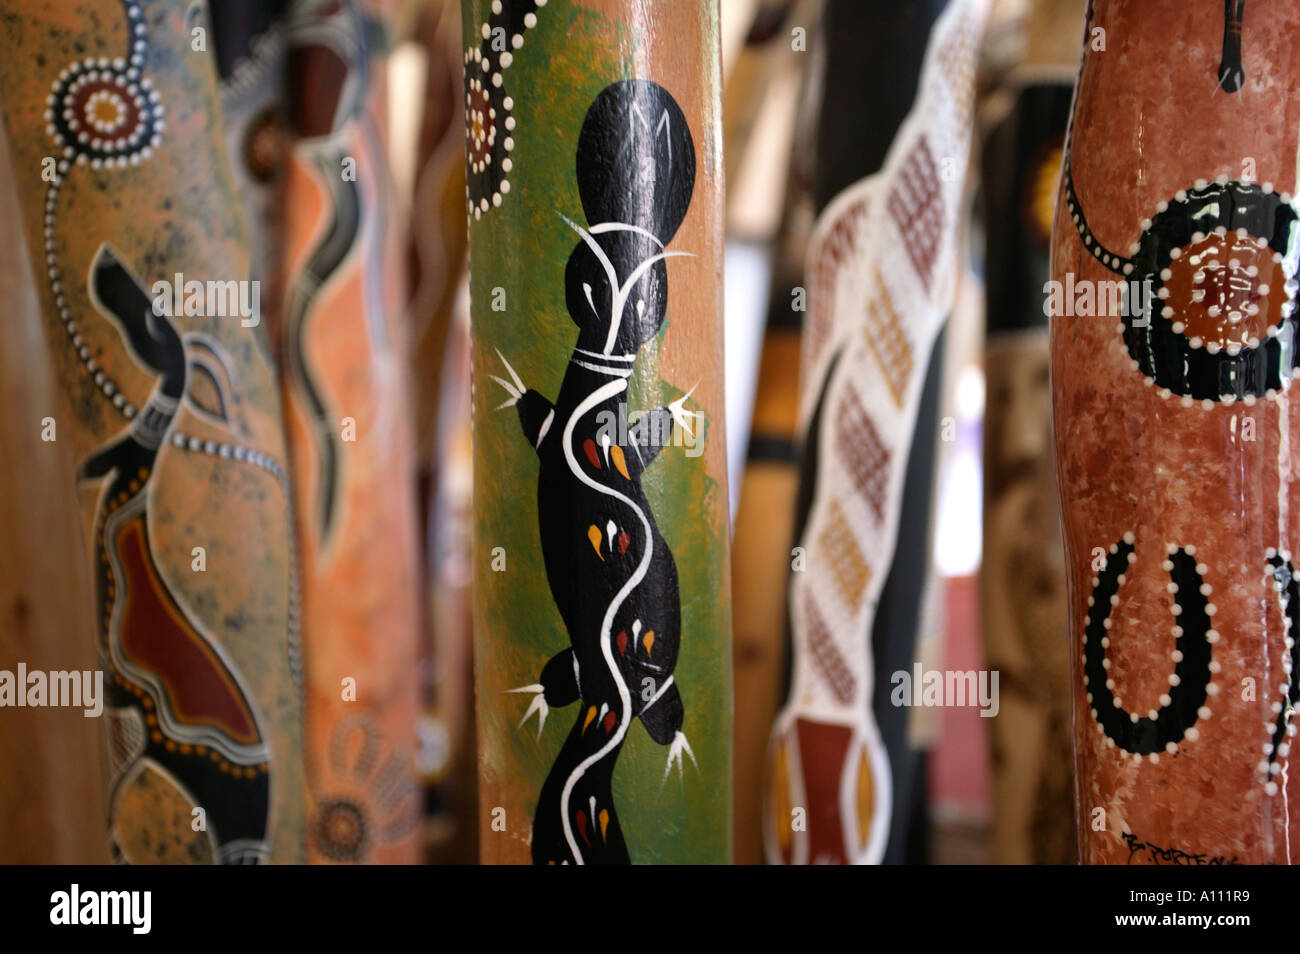 Les didgeridoos en vente dans une galerie d'art, Alice Springs, Territoire du Nord, Australie Banque D'Images